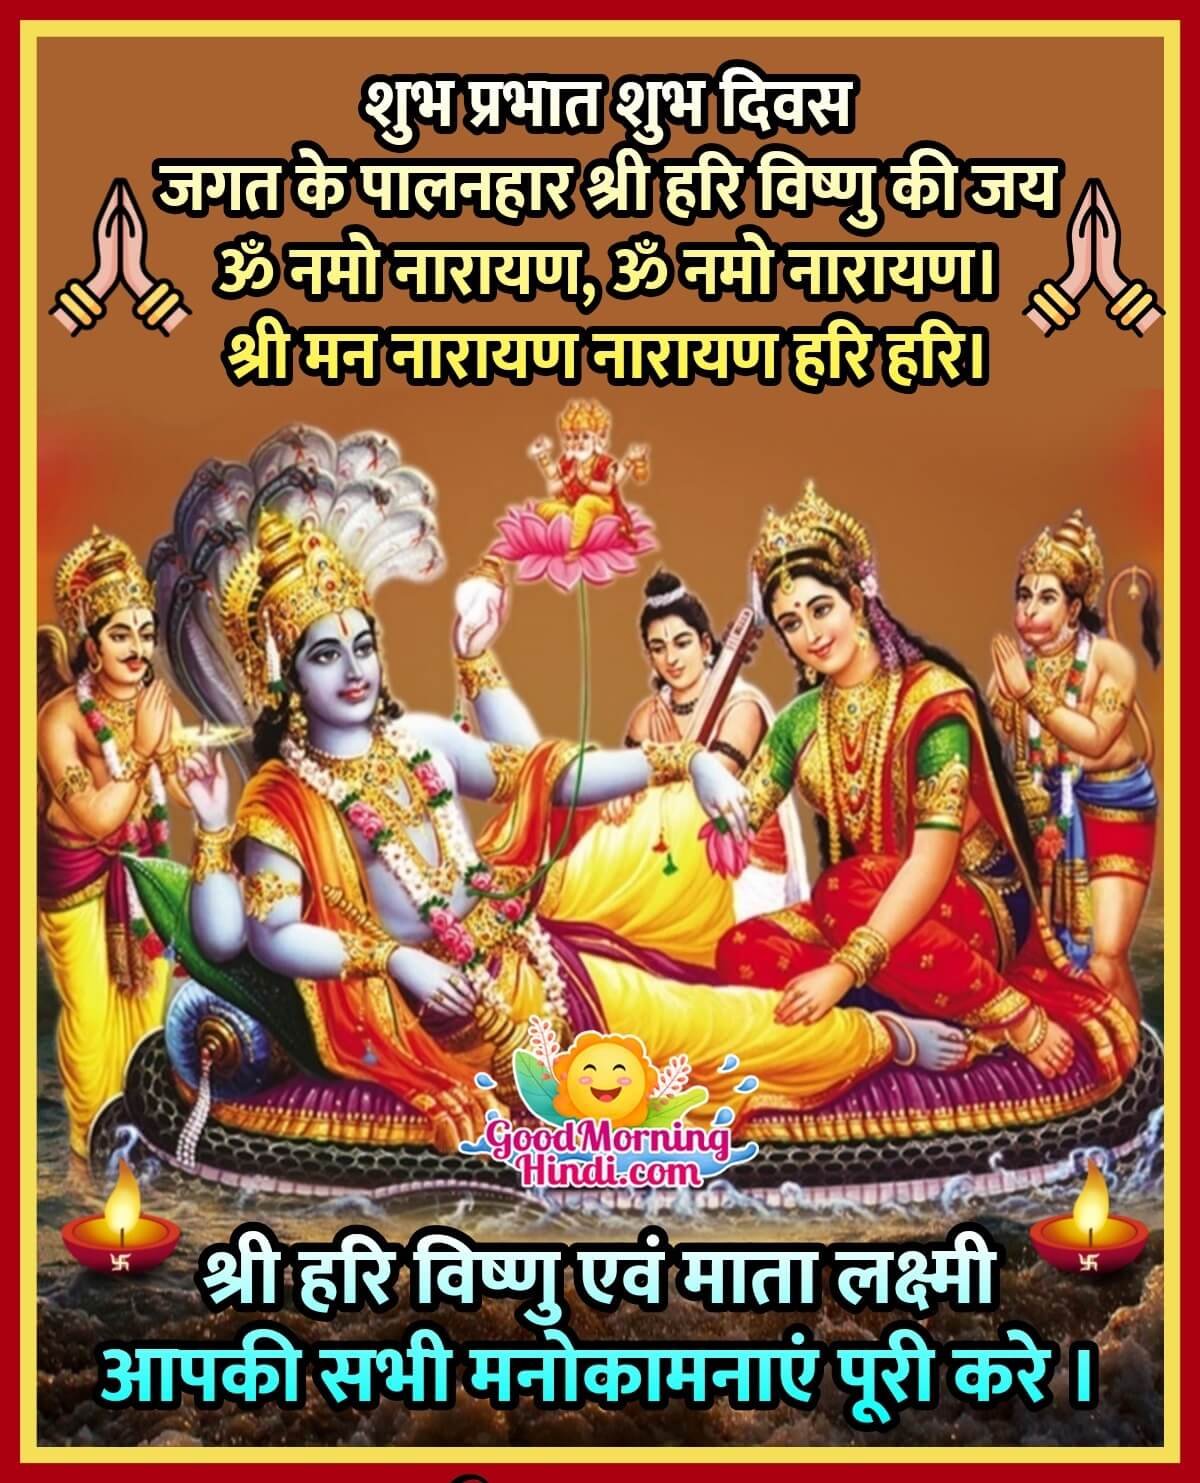 Good Morning Shri Vishnu Images In Hindi - Good Morning Wishes ...